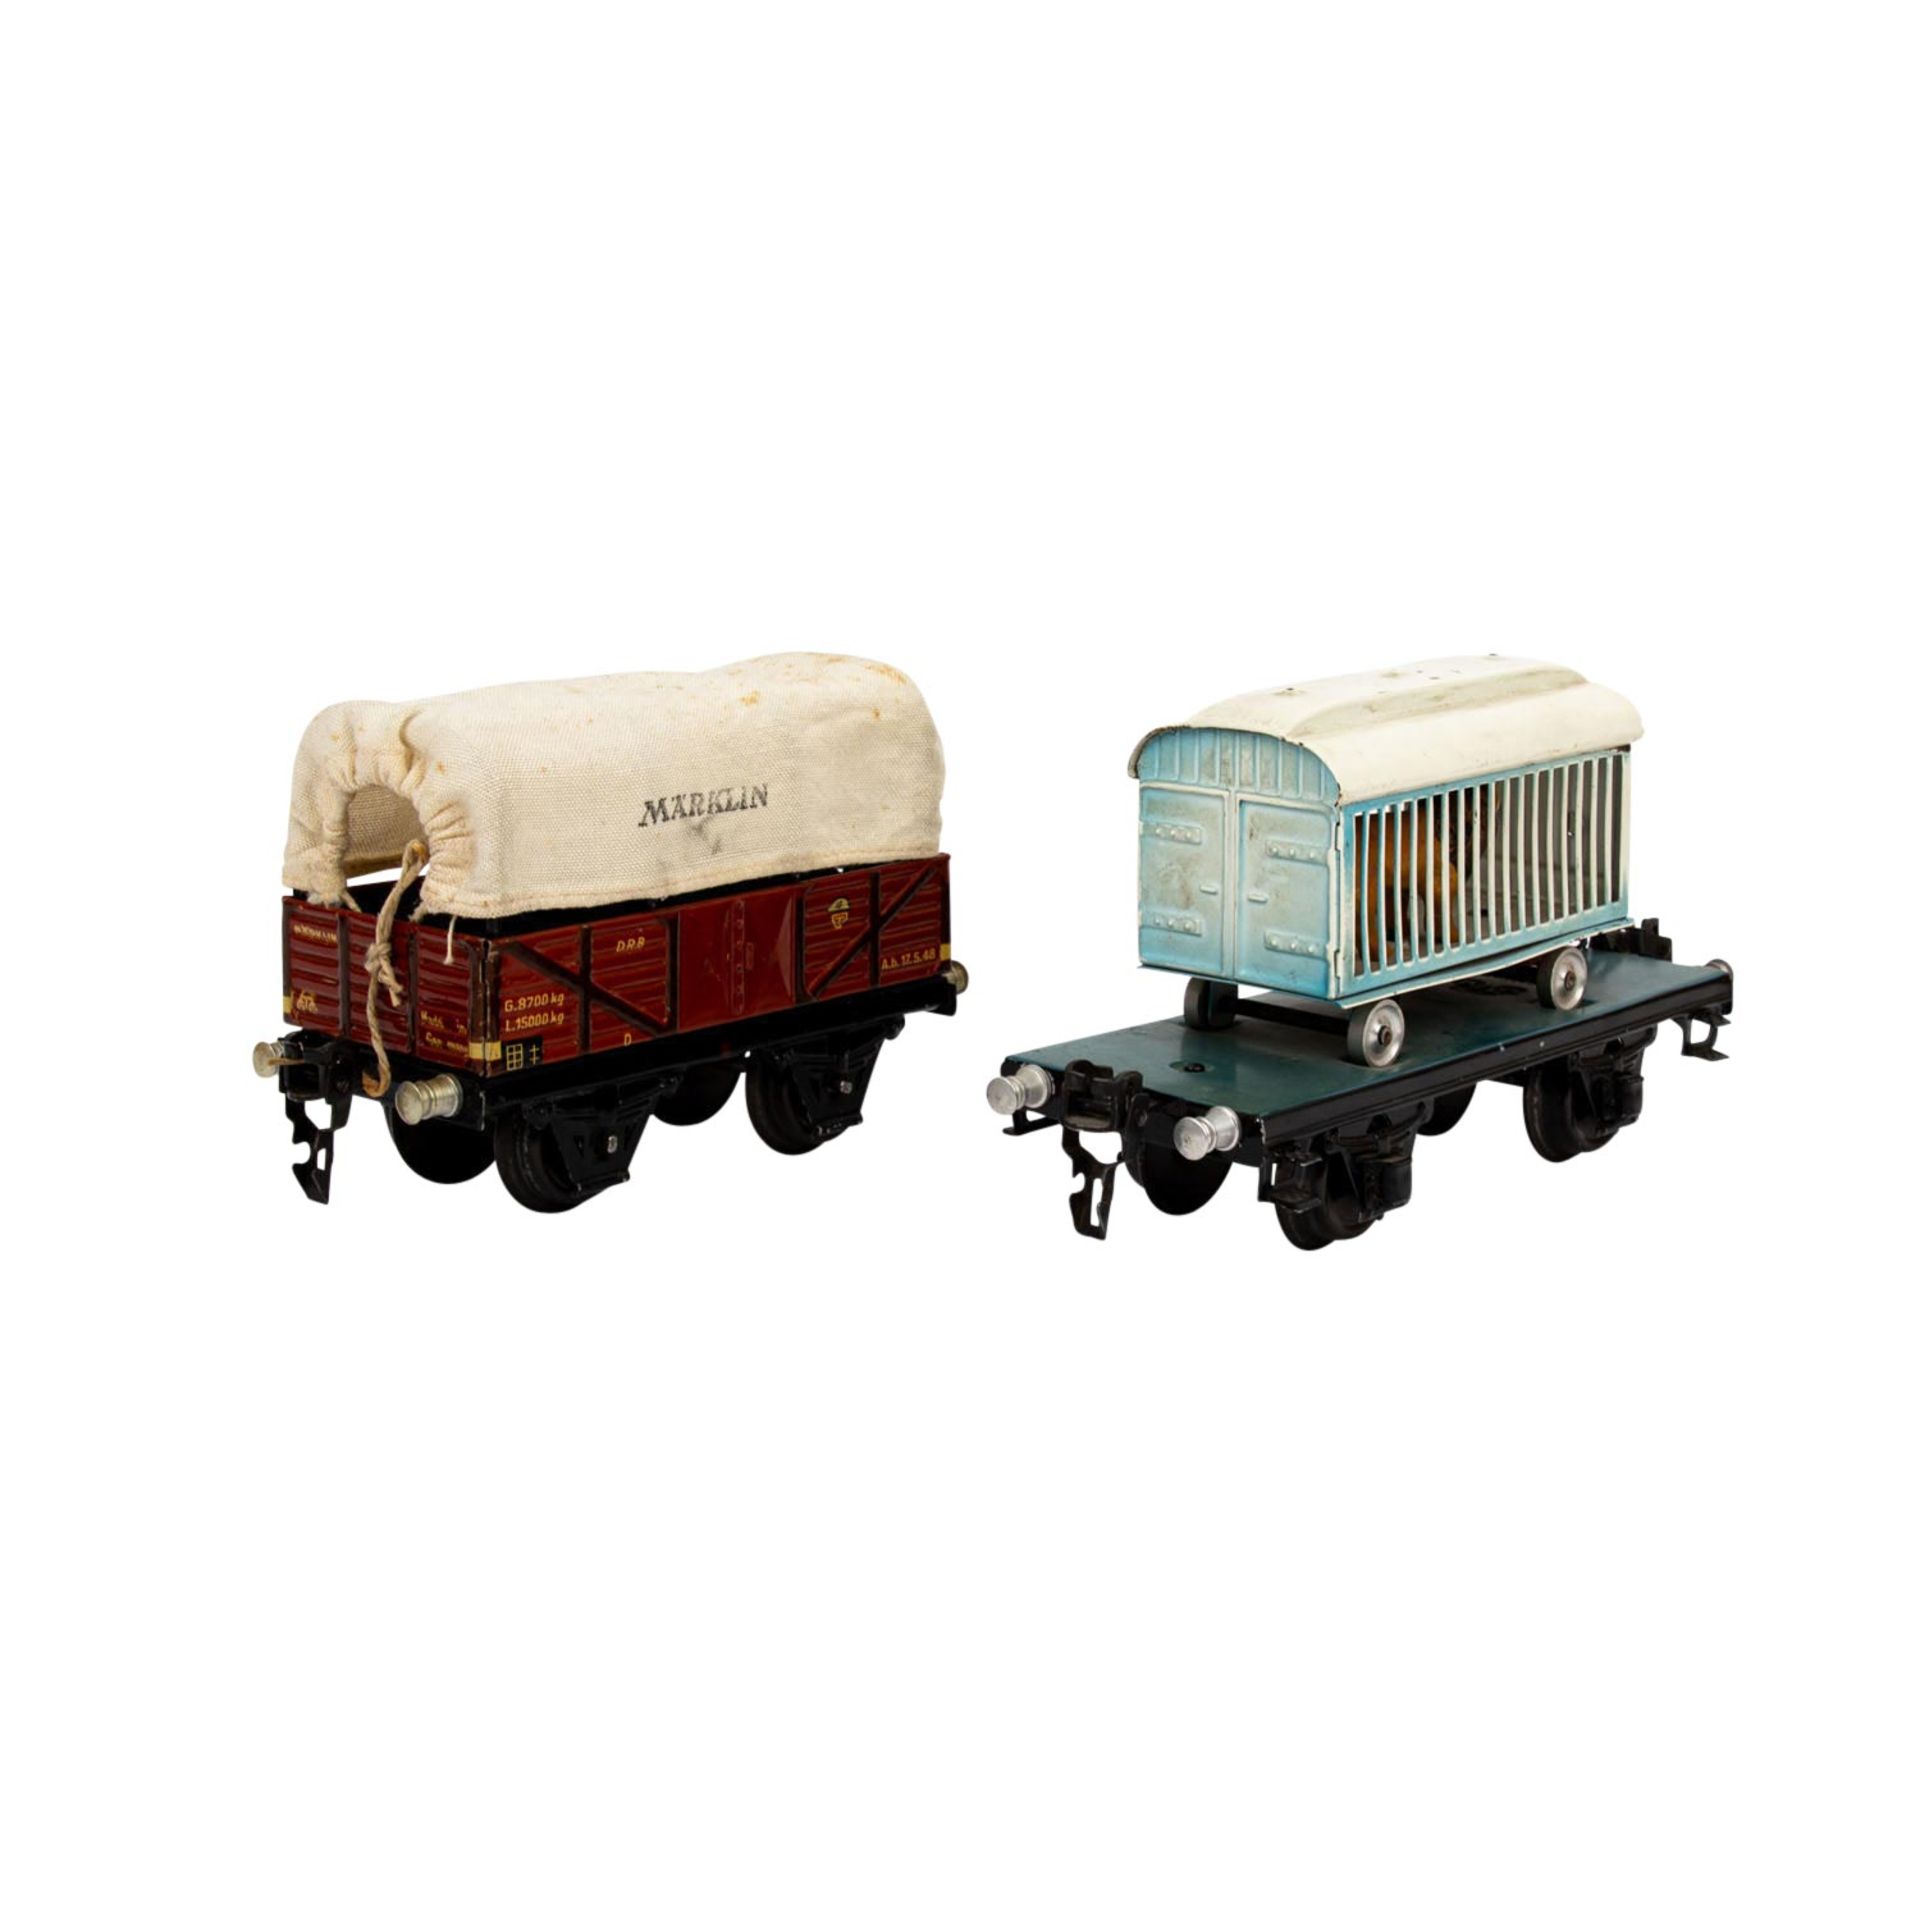 MÄRKLIN zwei Güterwagen, Spur 0, 1930er Jahre, bestehend aus Plattformwagen blau/sch - Image 4 of 7